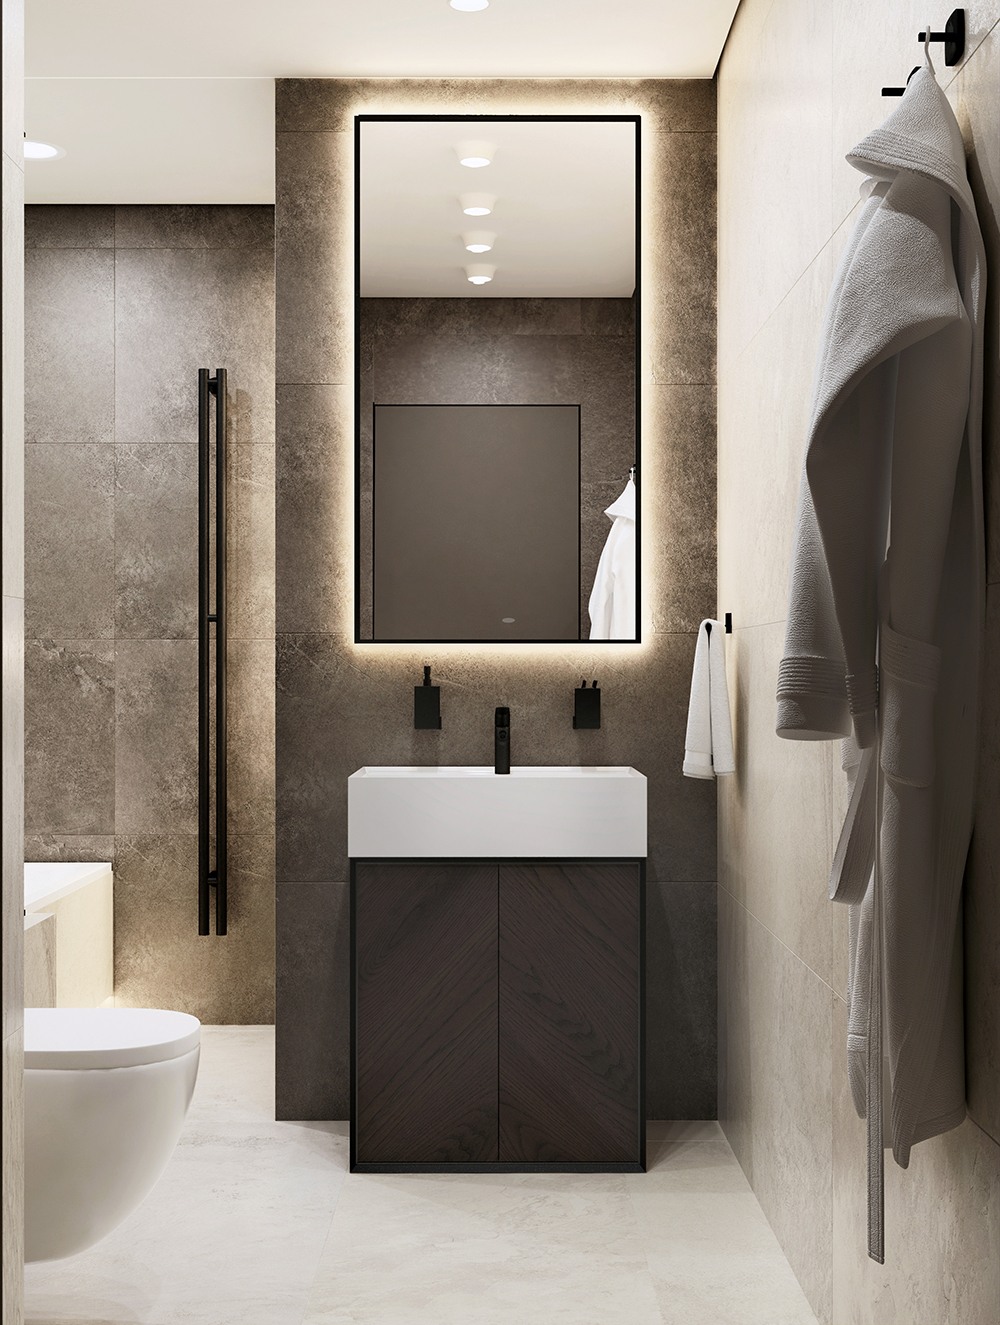 Концепция дизайна душевой и ванной комнаты от Дизайн-бюро "STAROV"